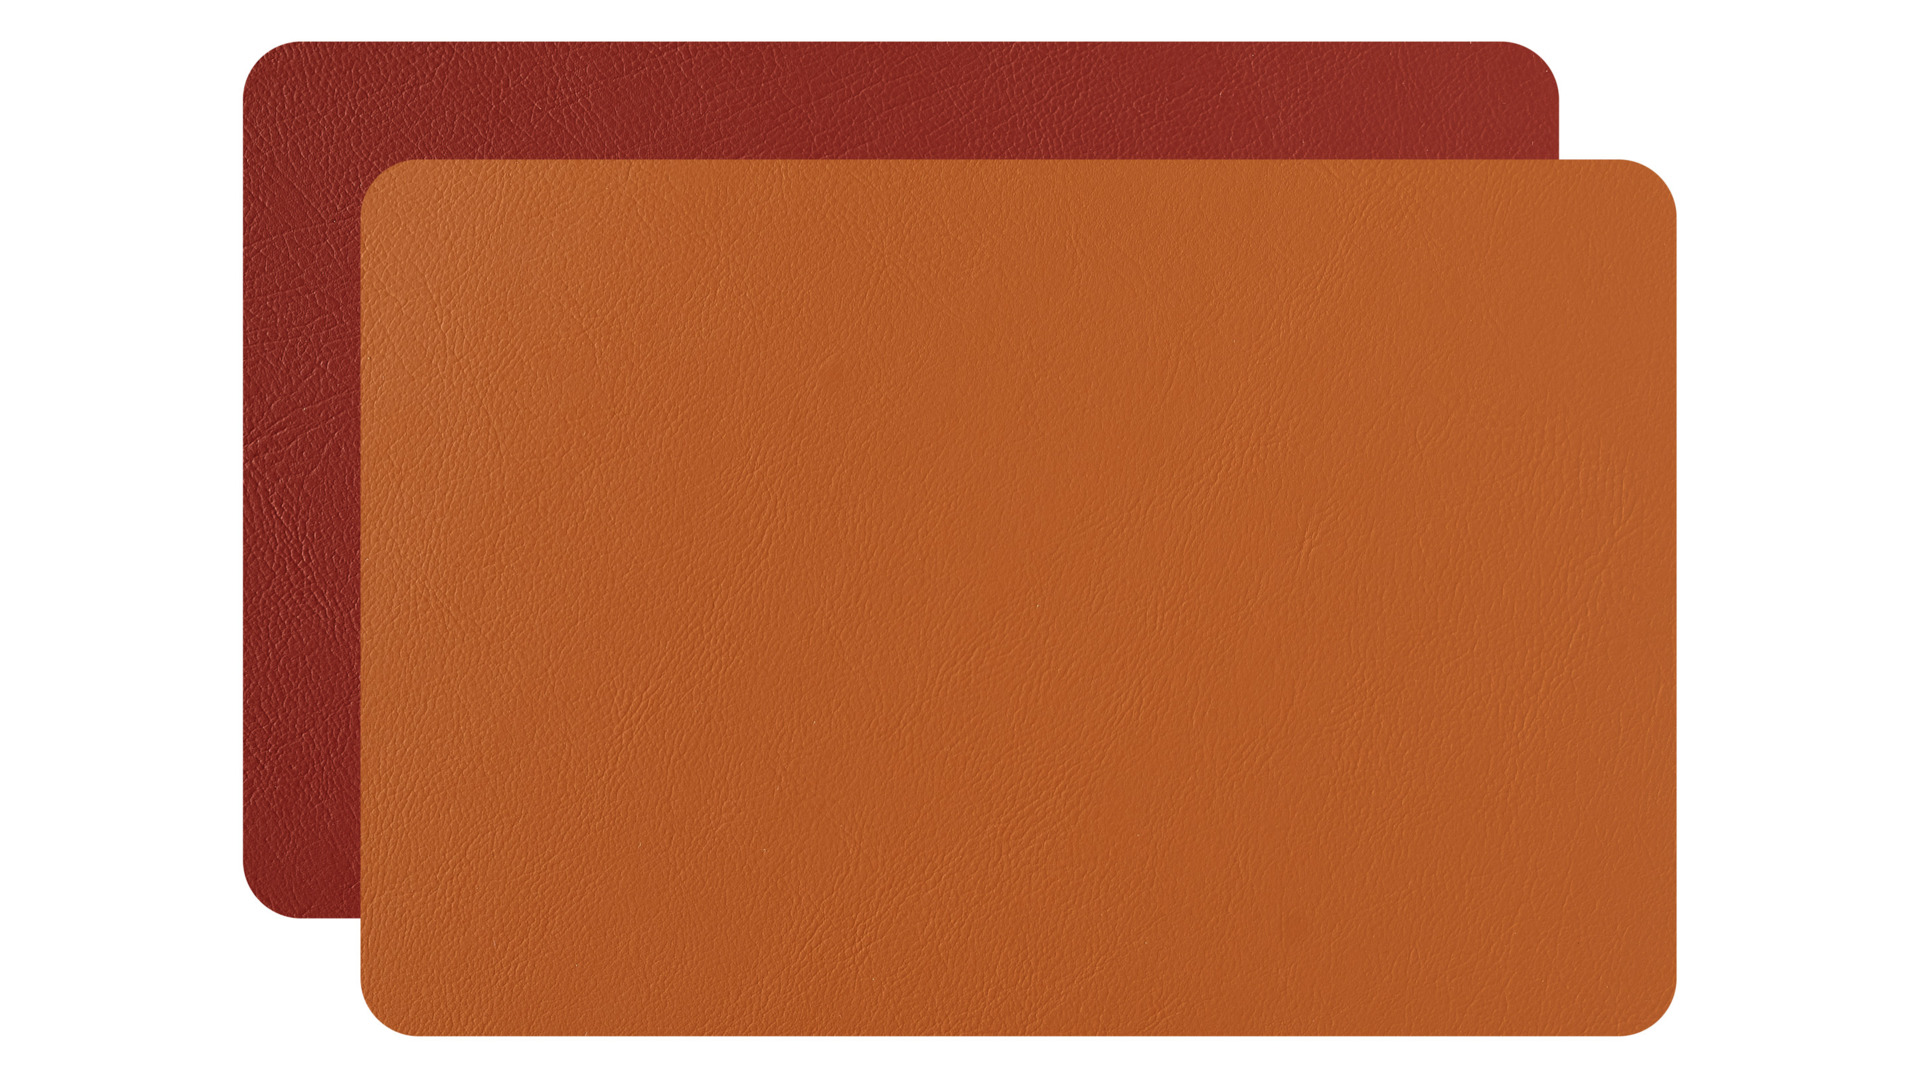 Плейсмат прямоугольный ADJ 45х30 см, кожа натуральная, бордо